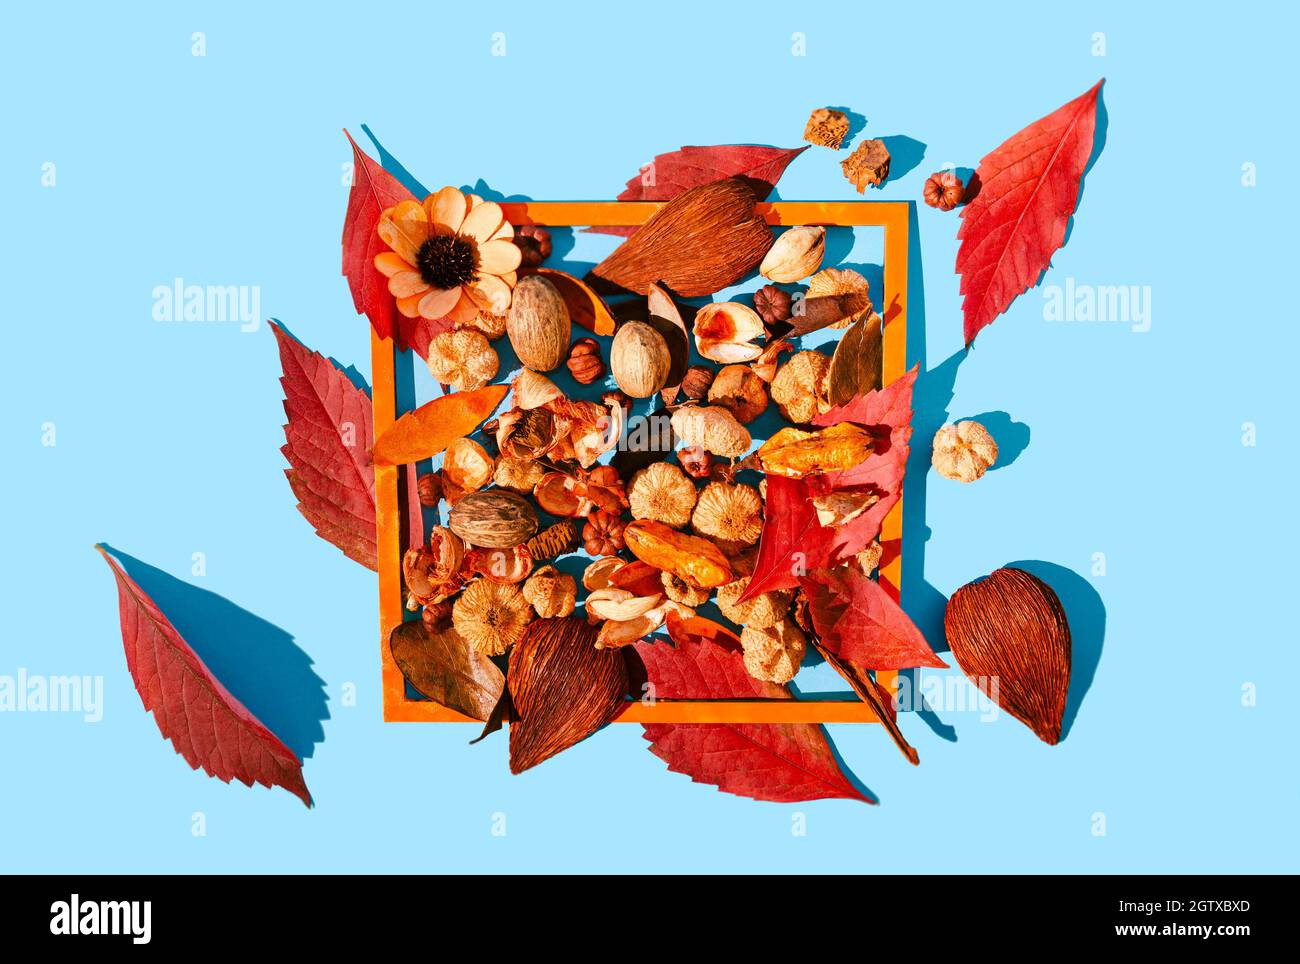 Hojas rojas de otoño y plantas de popurrí en un marco de madera naranja. Fondo azul pastel. El otoño vibra un diseño creativo romántico. Foto de stock